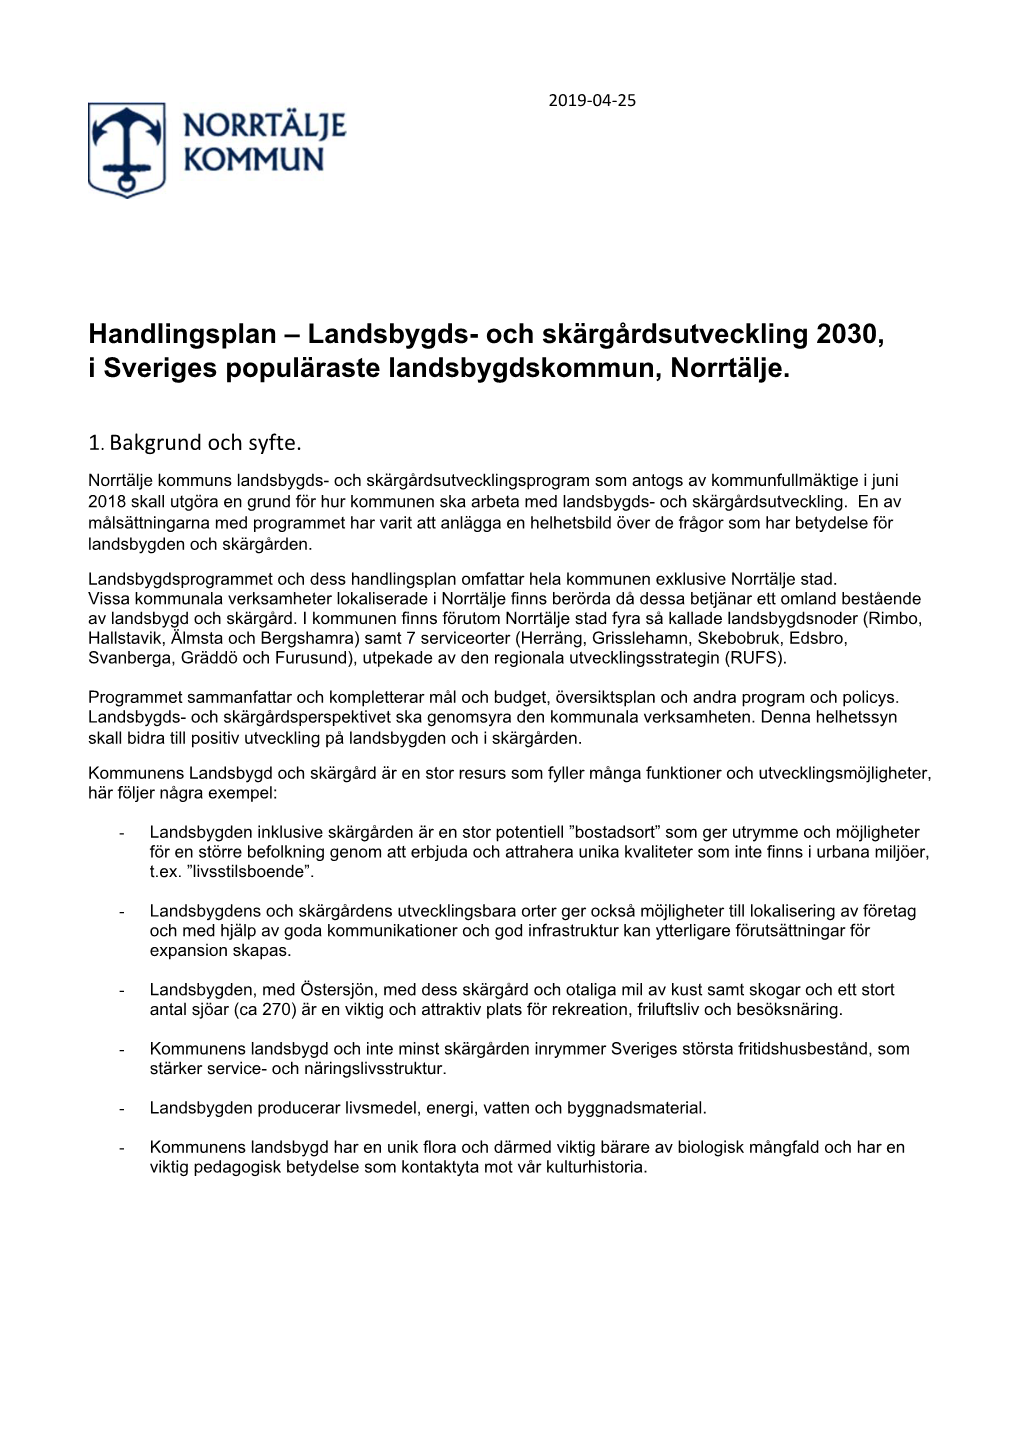 Handlingsplan – Landsbygds- Och Skärgårdsutveckling 2030, I Sveriges Populäraste Landsbygdskommun, Norrtälje